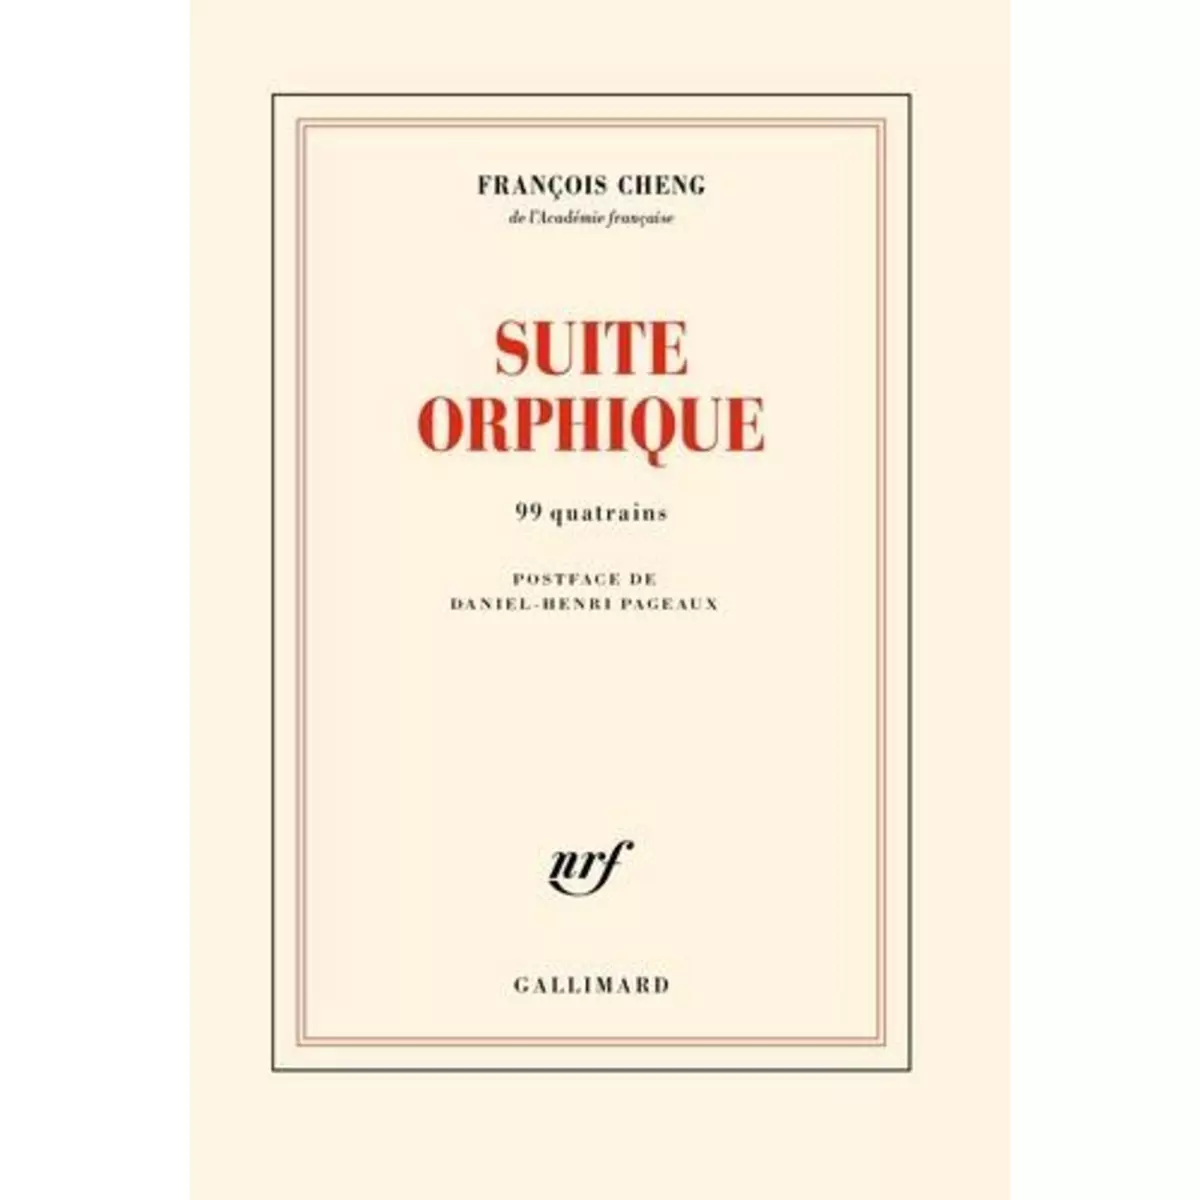  SUITE ORPHIQUE. 99 QUATRAINS, Cheng François